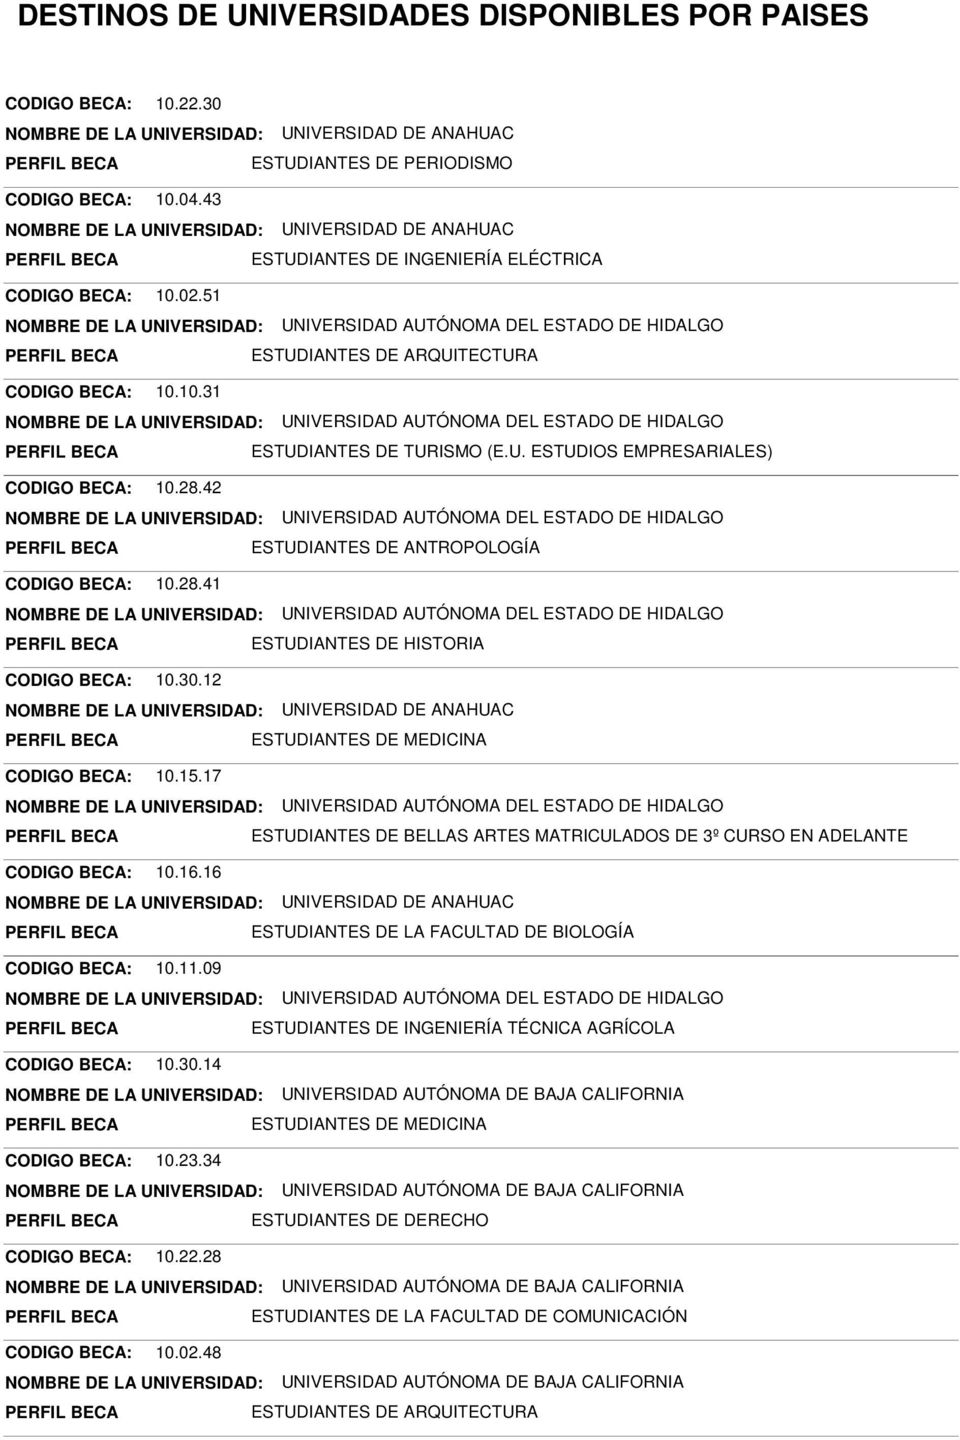 17 ESTUDIANTES DE BELLAS ARTES MATRICULADOS DE 3º CURSO EN ADELANTE CODIGO BECA: 10.16.16 ESTUDIANTES DE LA FACULTAD DE BIOLOGÍA CODIGO BECA: 10.11.